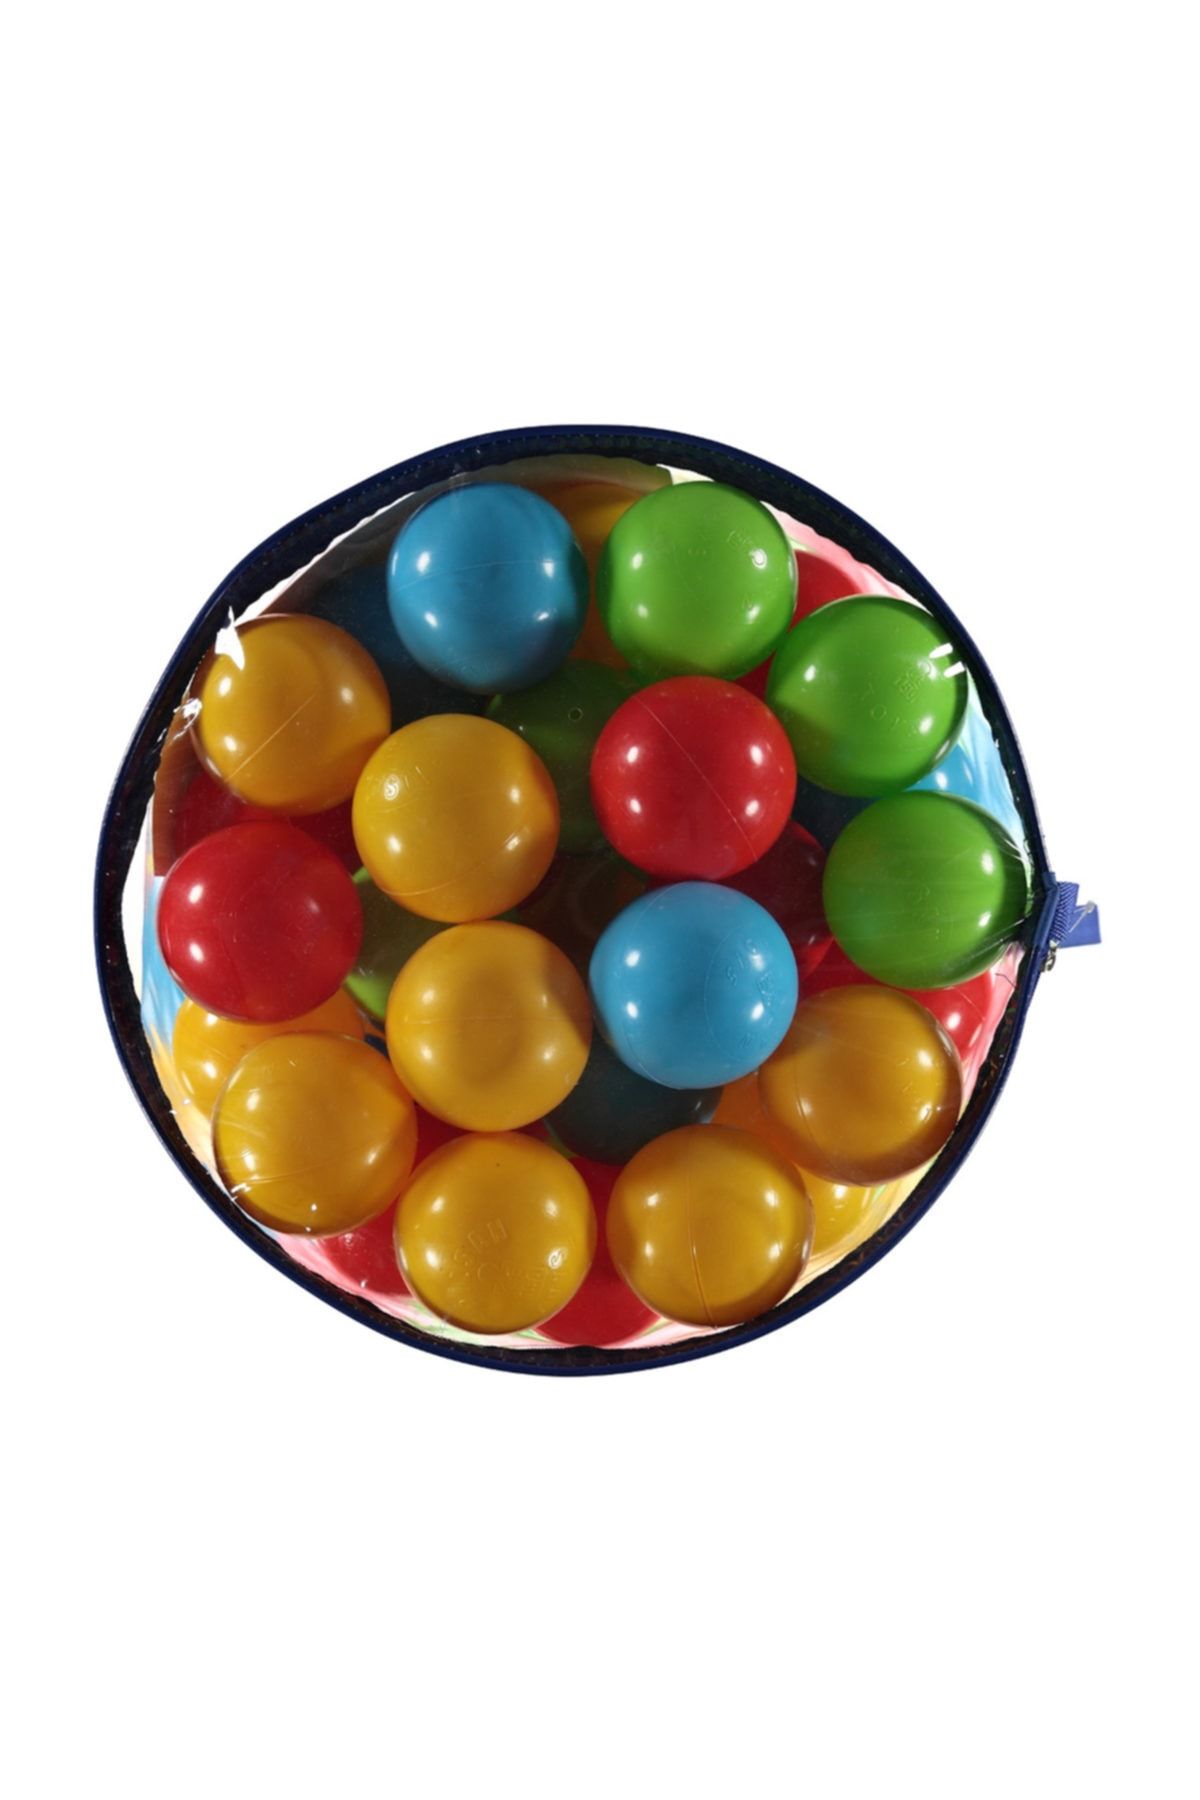 PİLSAN 9 cm 100'lü Torbada Oyun Havuzu Topları